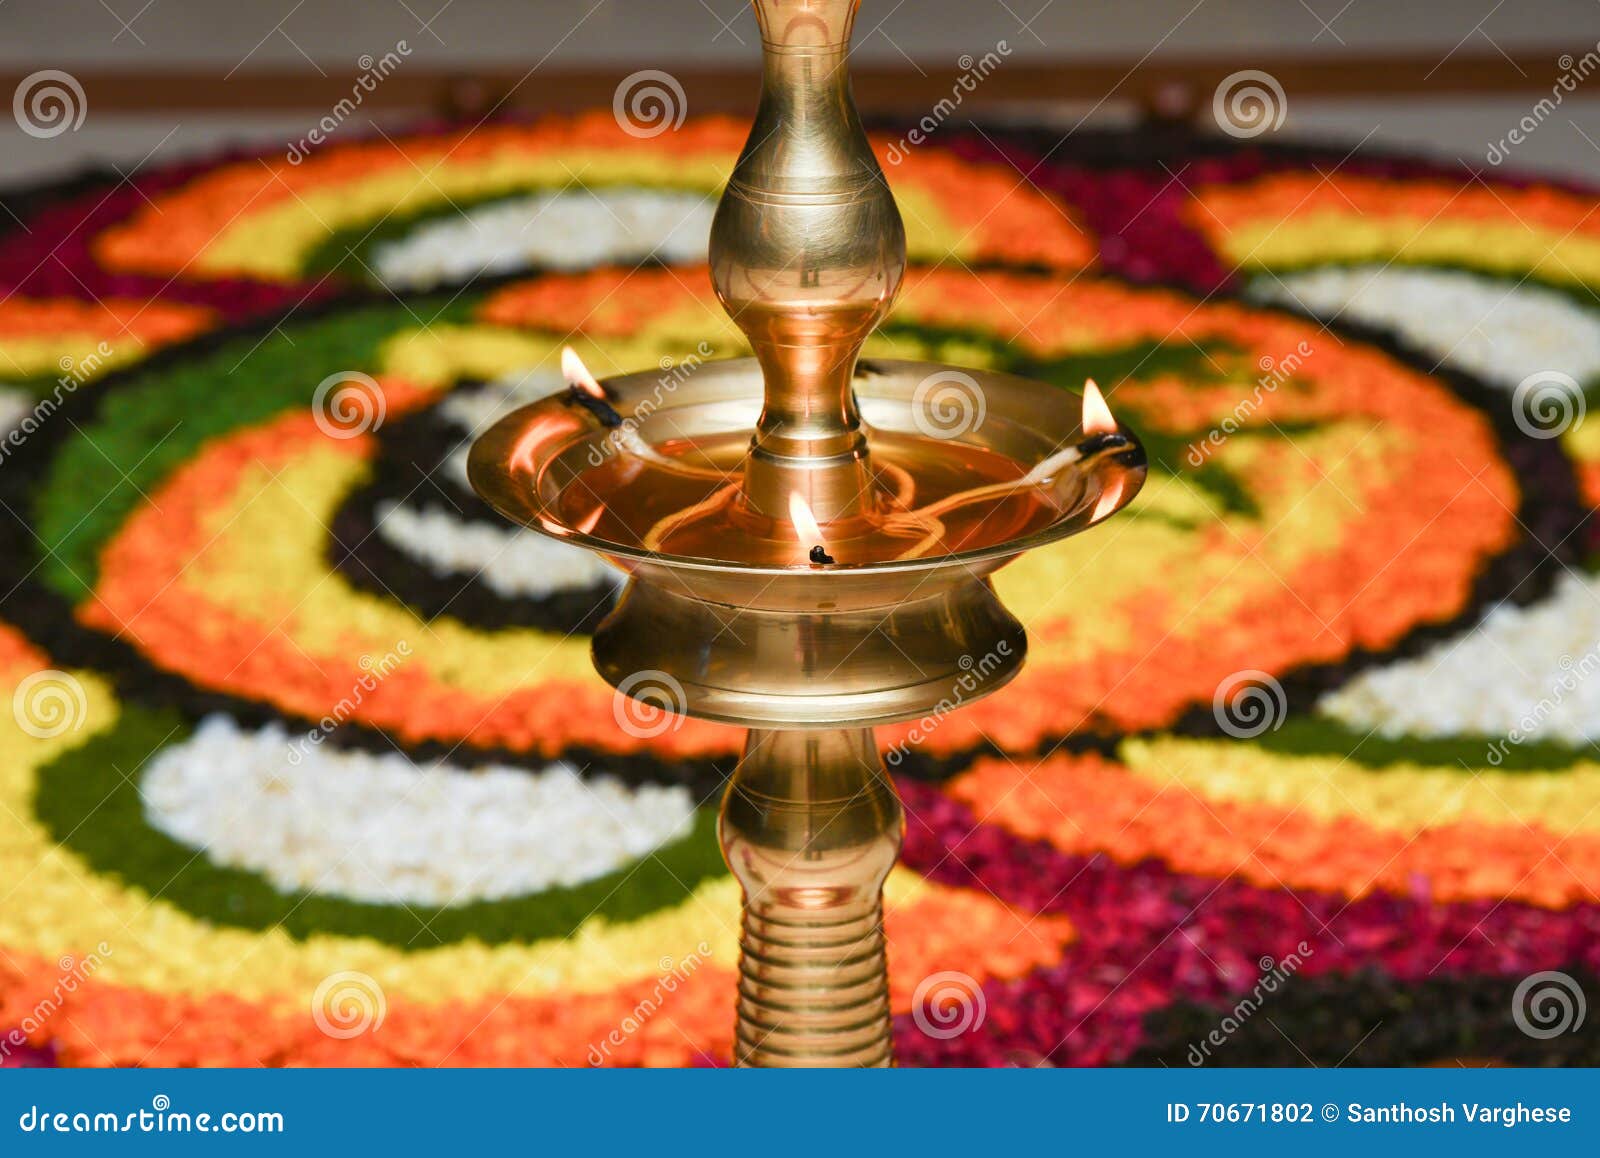 oil lamp for onam festival kerala india